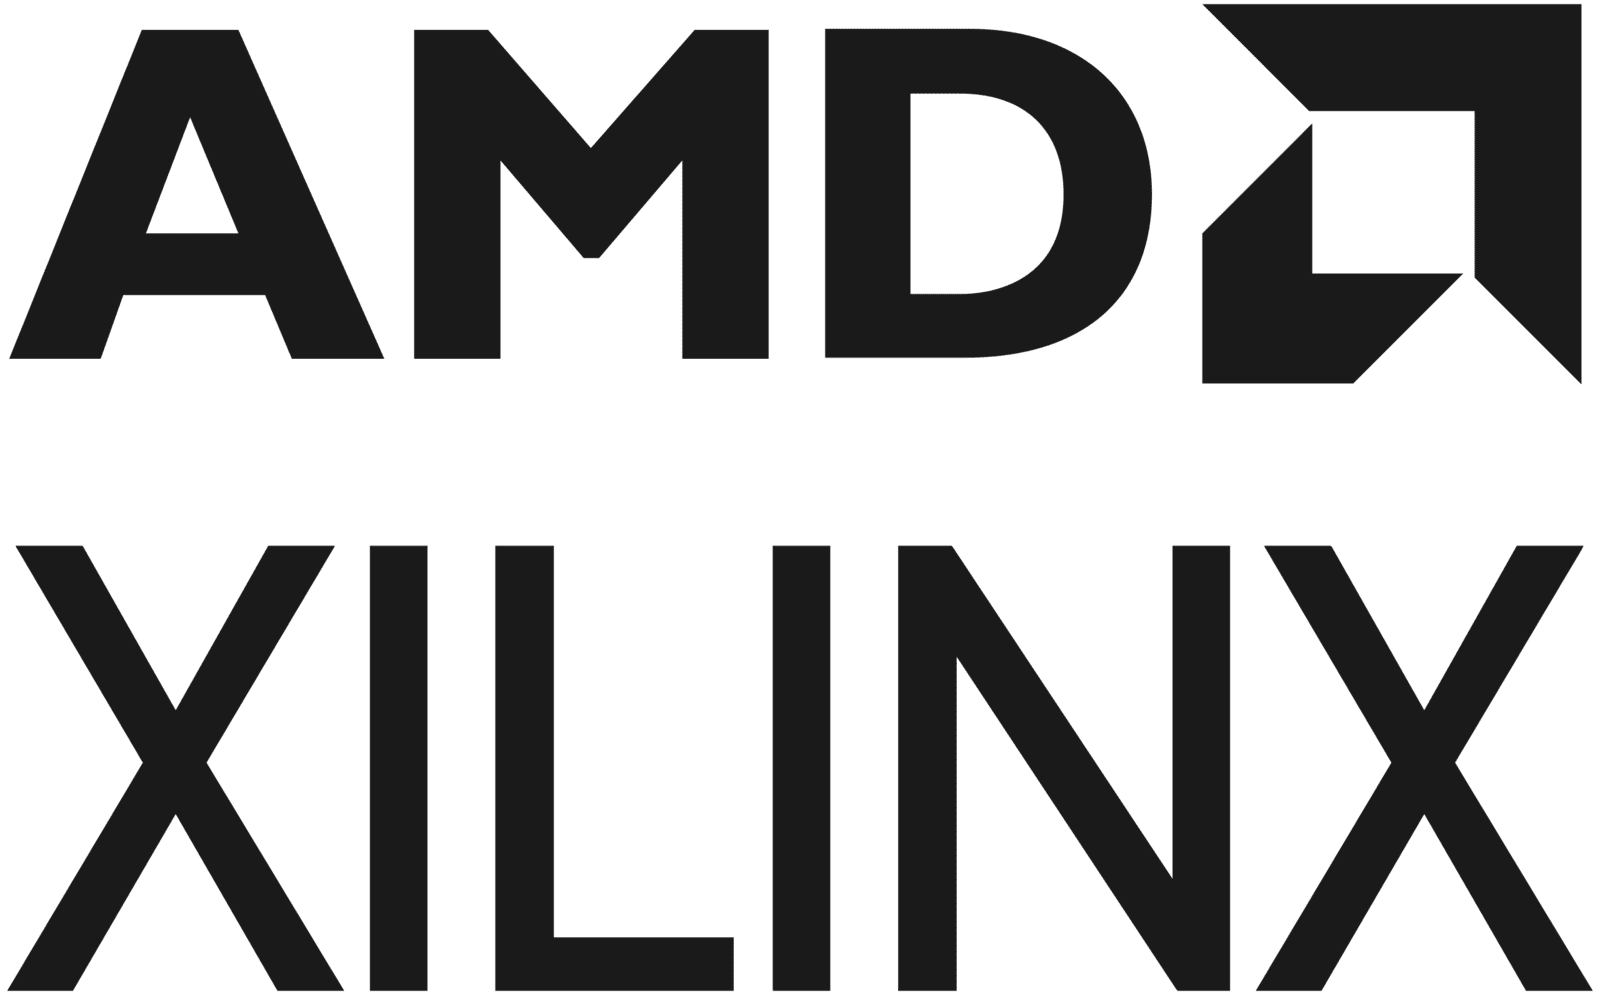 intoPIX 技术合作伙伴 Xilinx